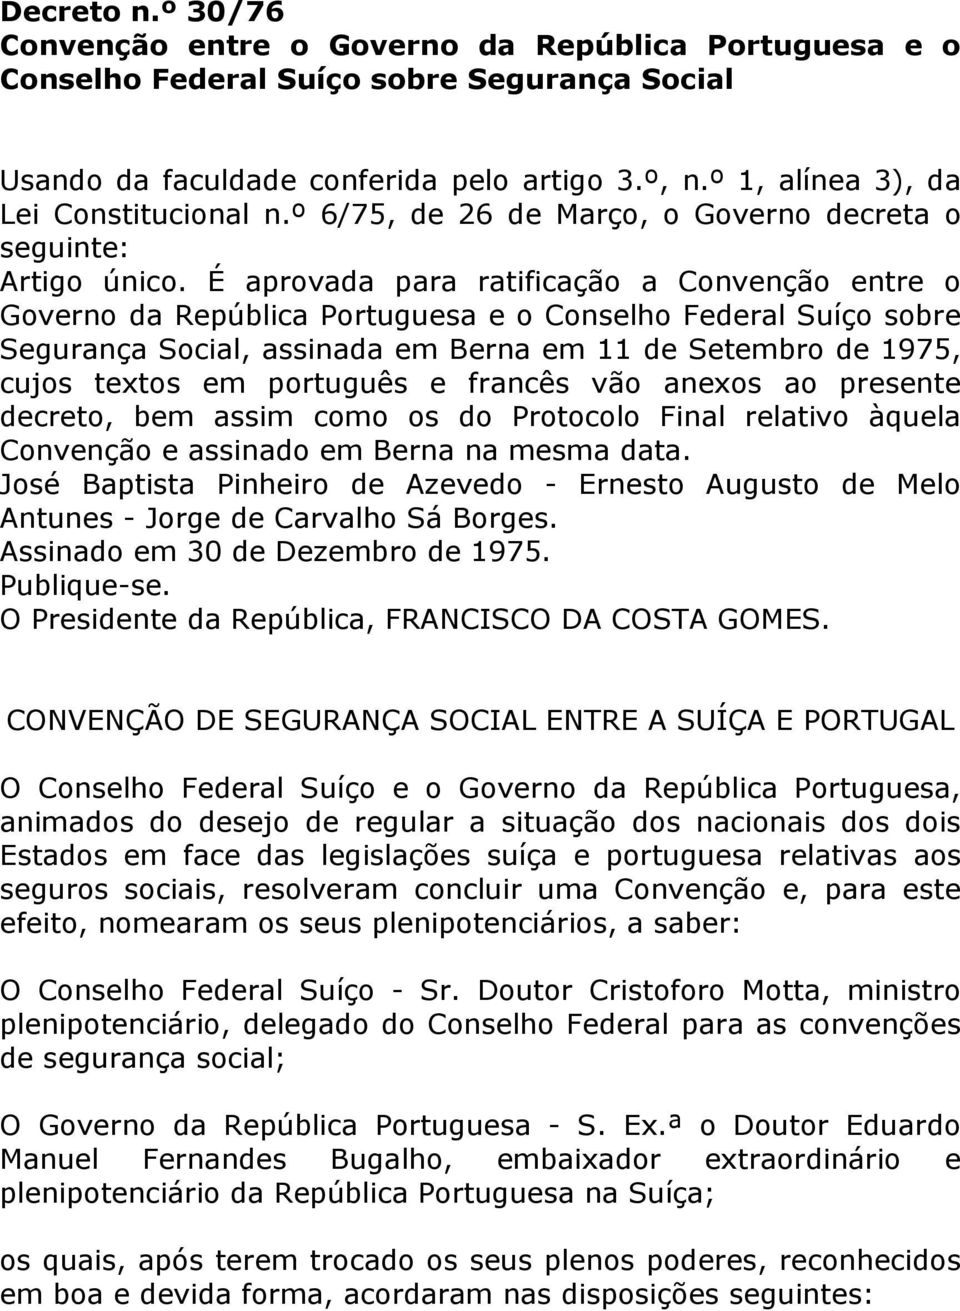 É aprovada para ratificação a Convenção entre o Governo da República Portuguesa e o Conselho Federal Suíço sobre Segurança Social, assinada em Berna em 11 de Setembro de 1975, cujos textos em